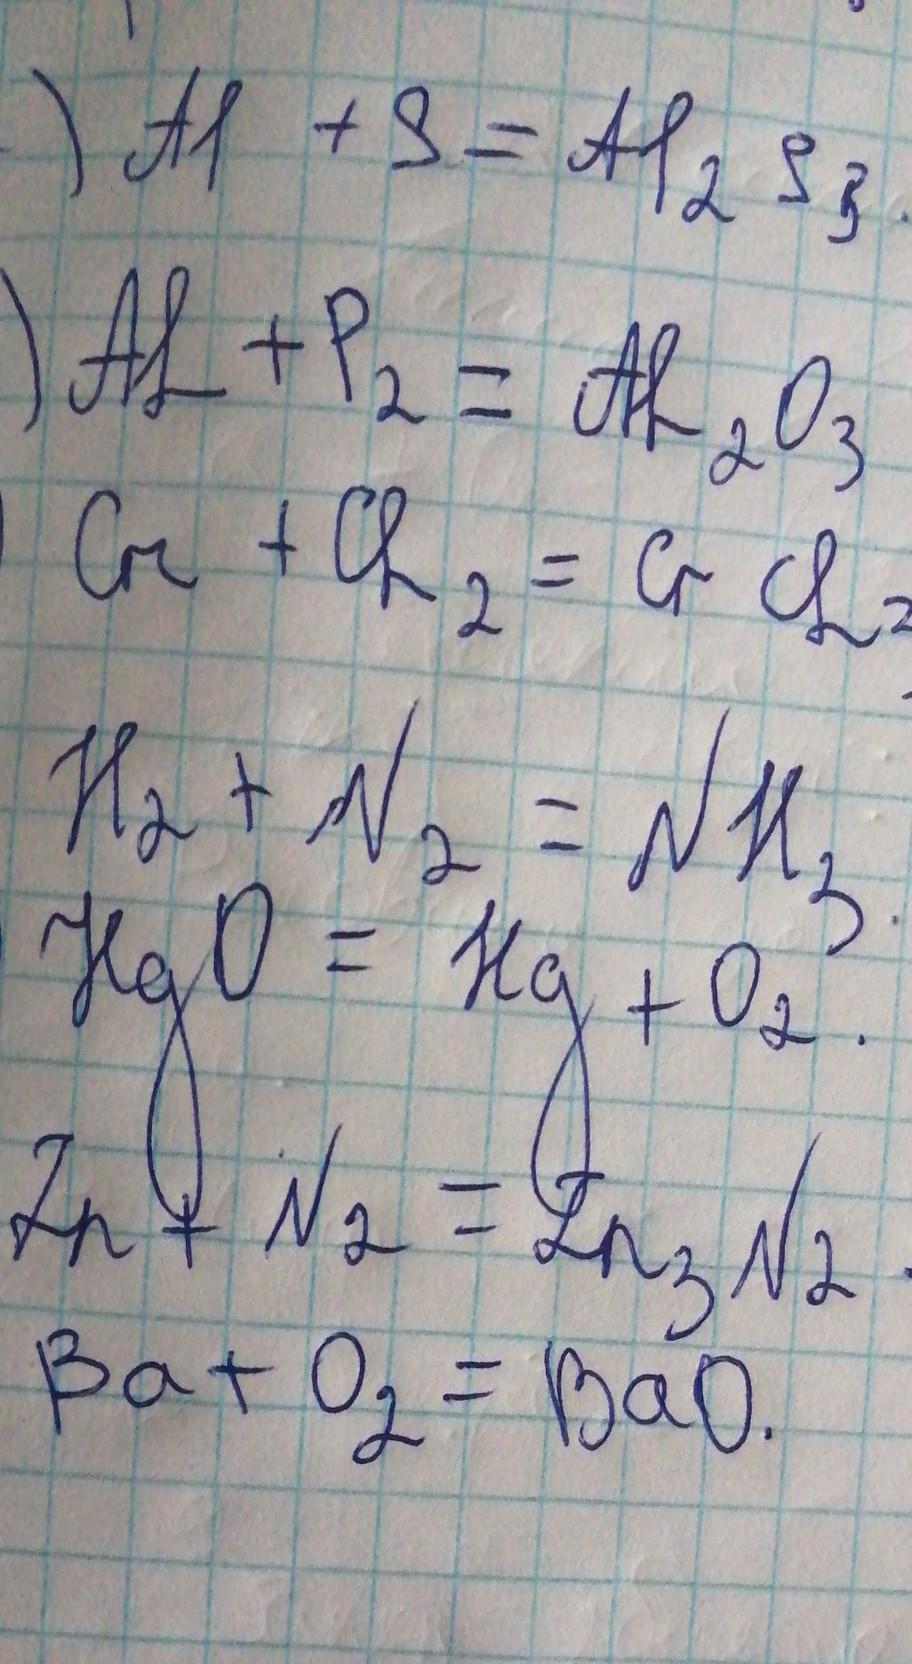 Zn n2 реакция. ZN+n2. ZN+n2 t. HGO HG o2 окислительно восстановительная. Закончите уравнения реакций al+n2.